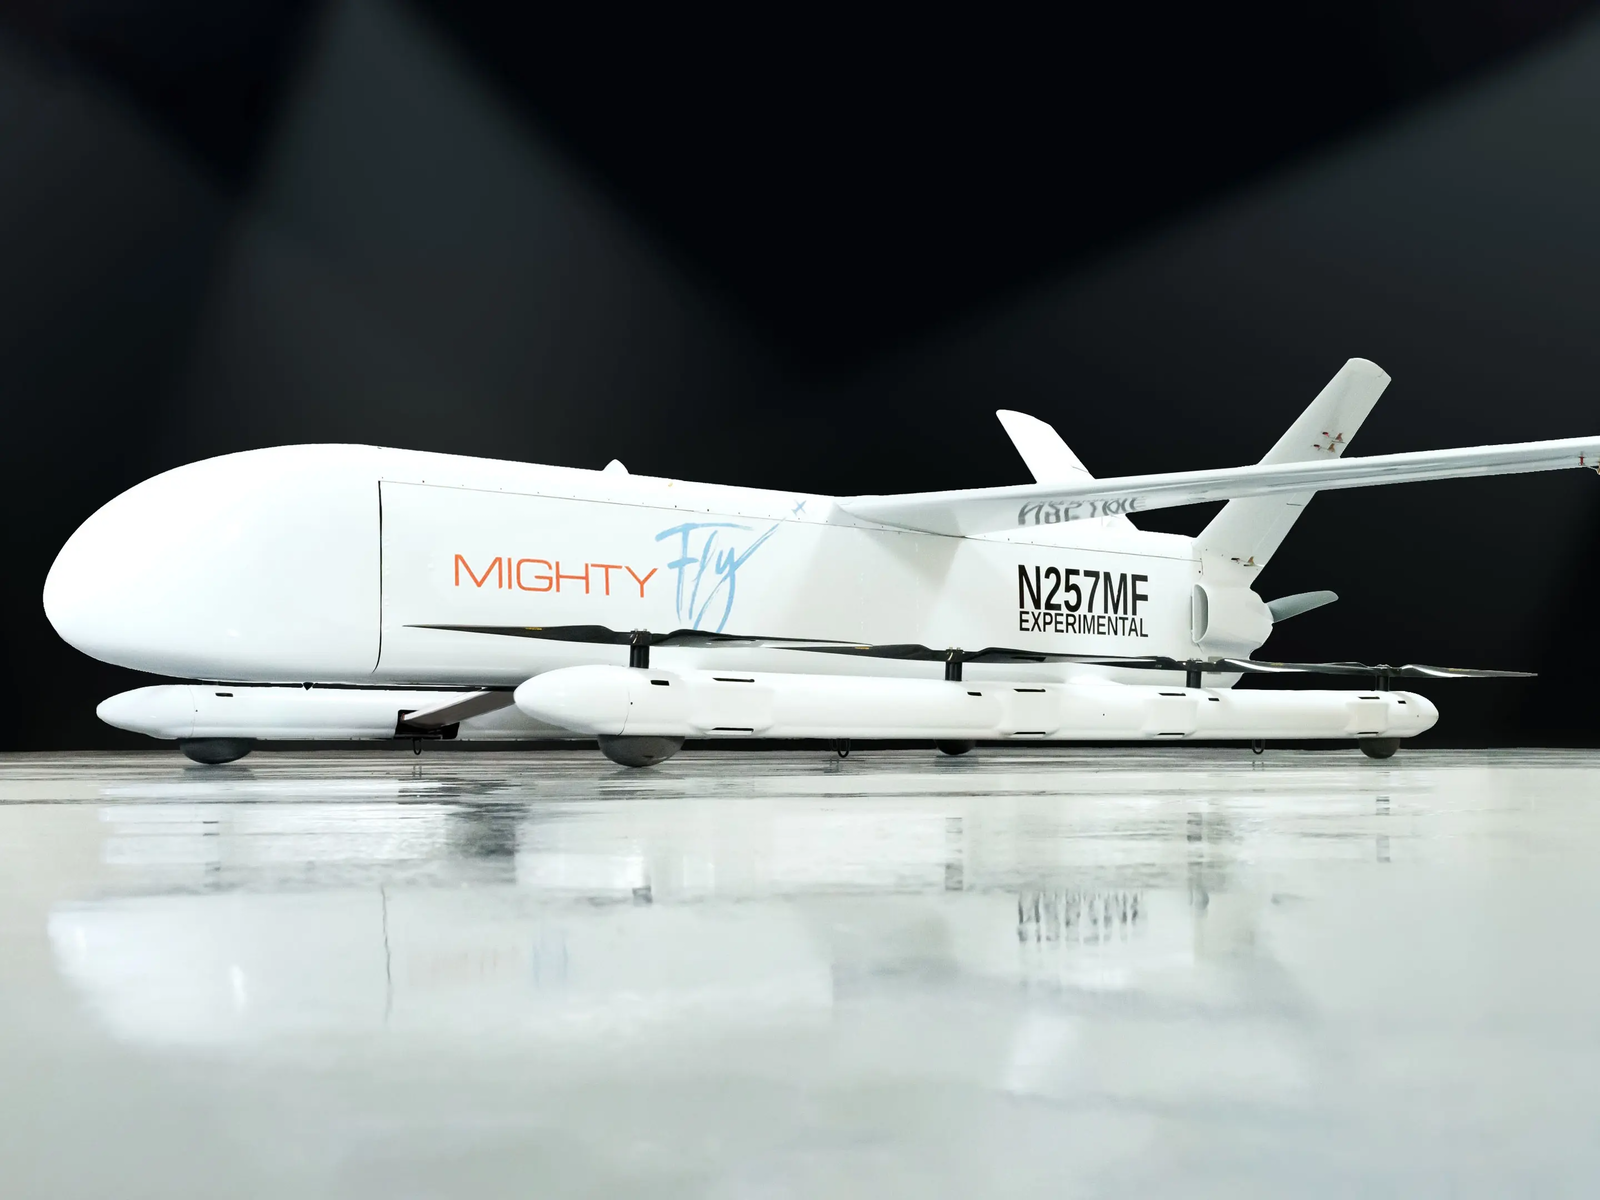 Transporter de nombreux colis légers sur une longue distance, c'est l'objectif de ce drone cargo. © MightyFly